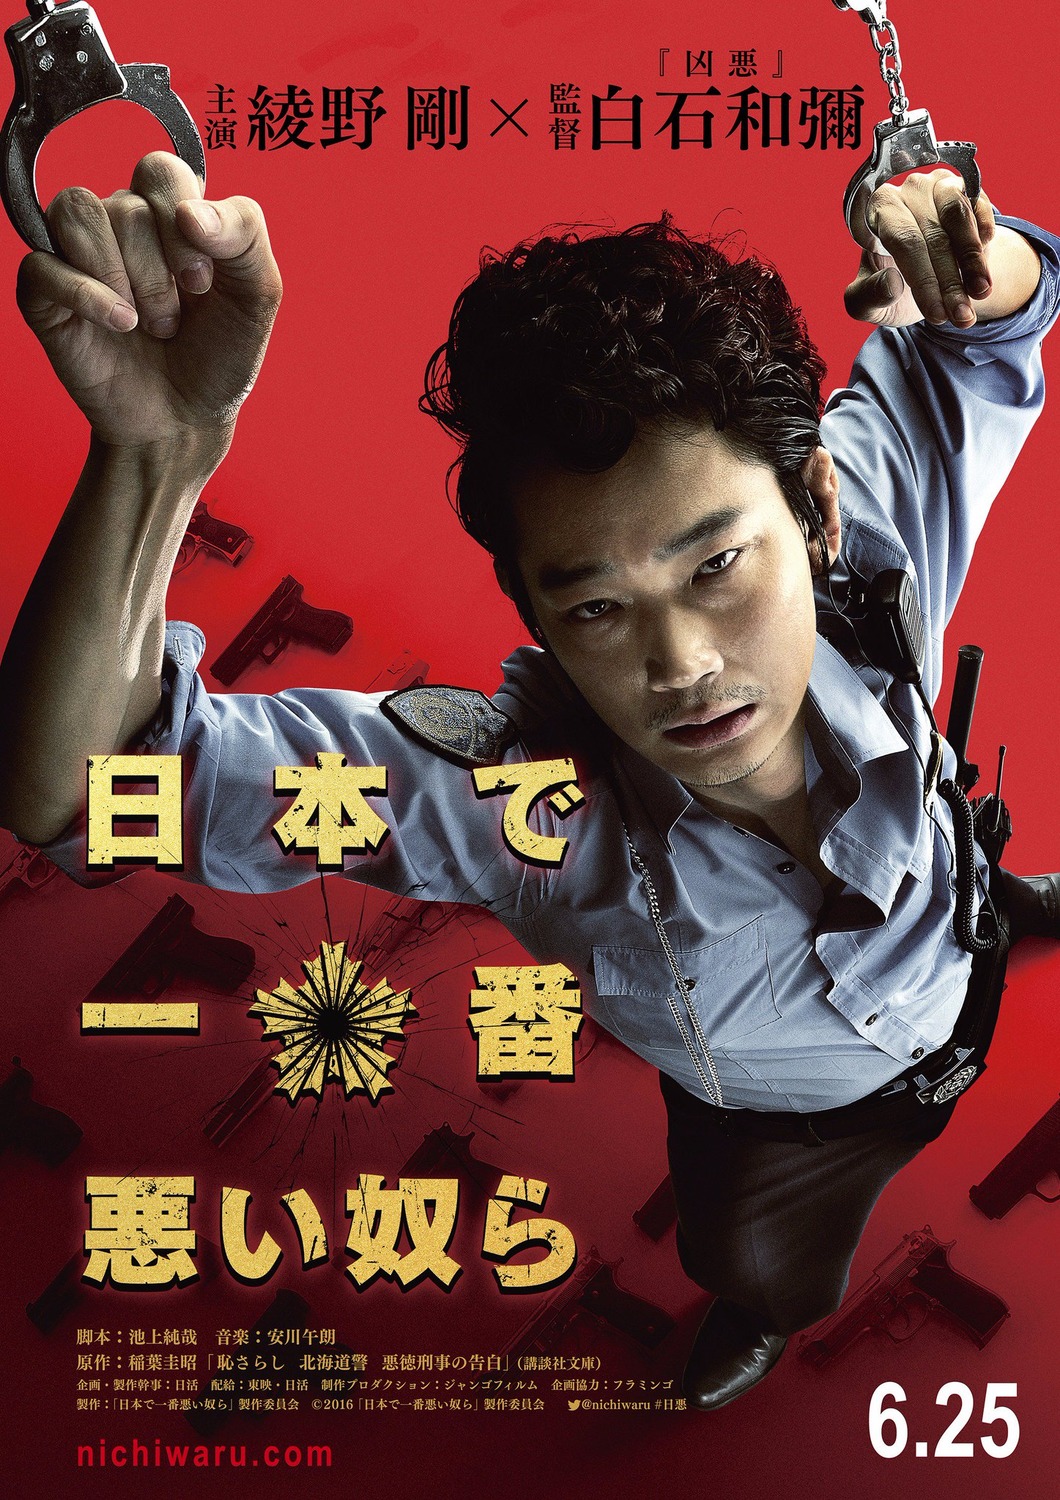 Extra Large Movie Poster Image for Nihon de ichiban warui yatsura (#1 of 3)